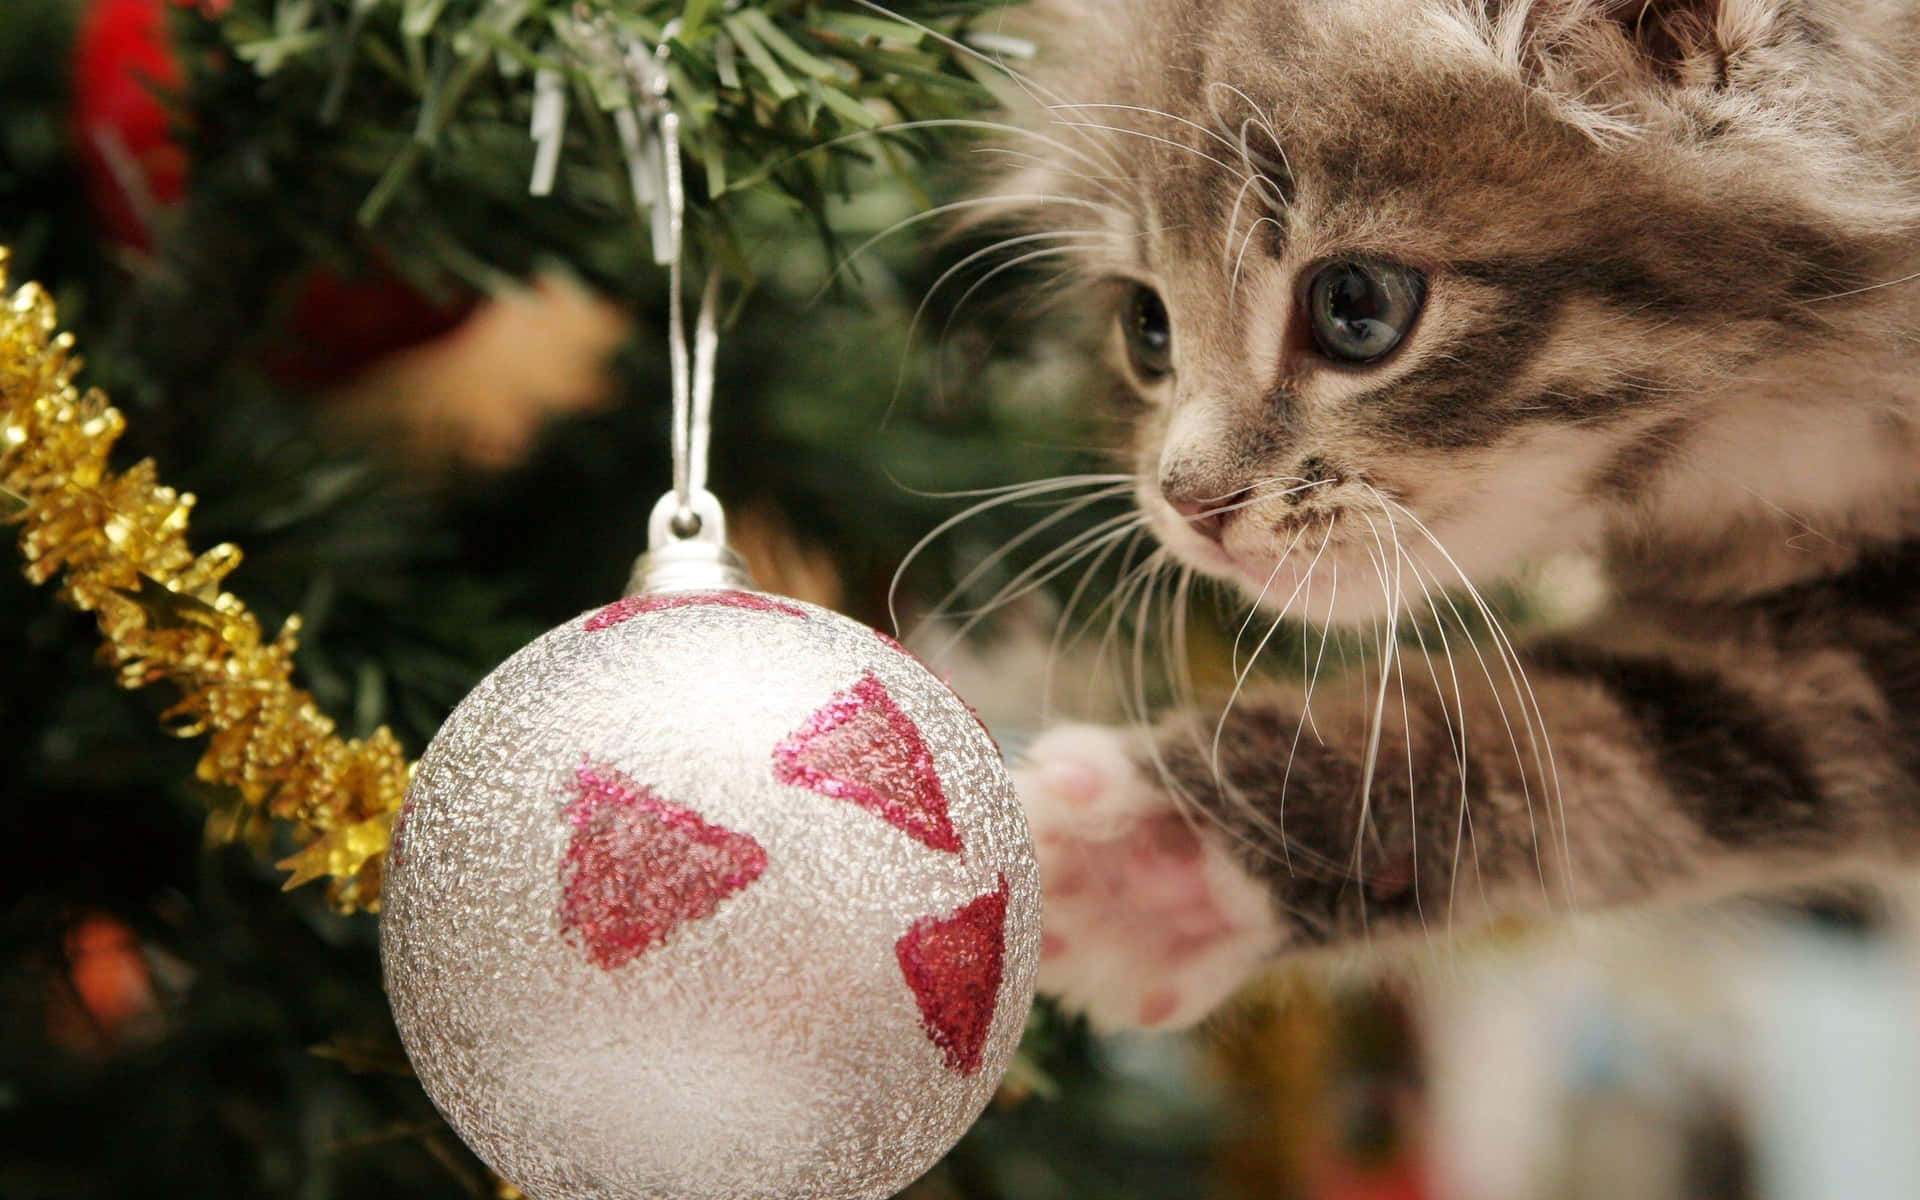 Julen Cat Billeder 2560 X 1600